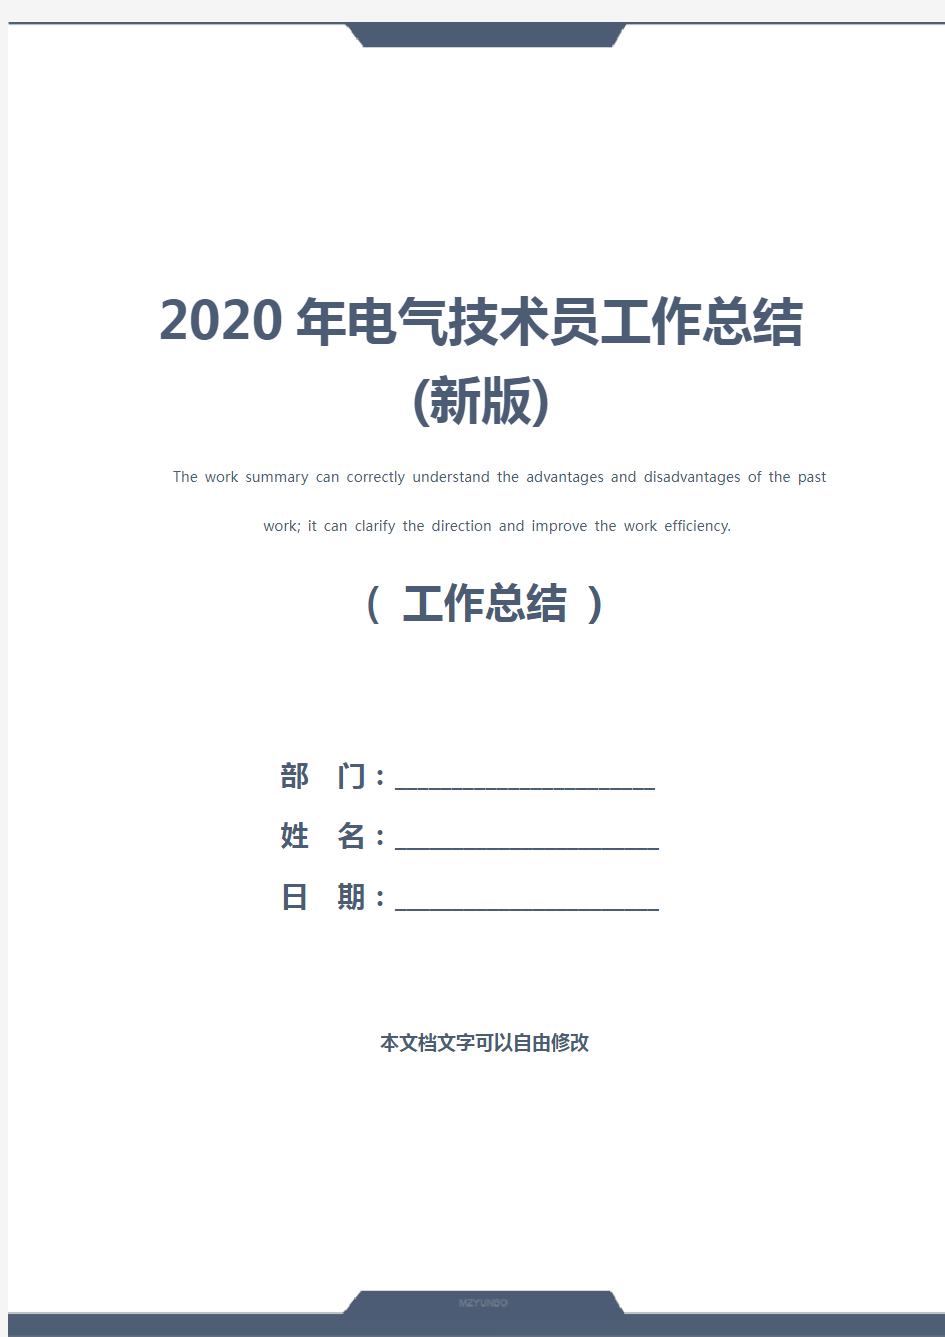 2020年电气技术员工作总结(新版)